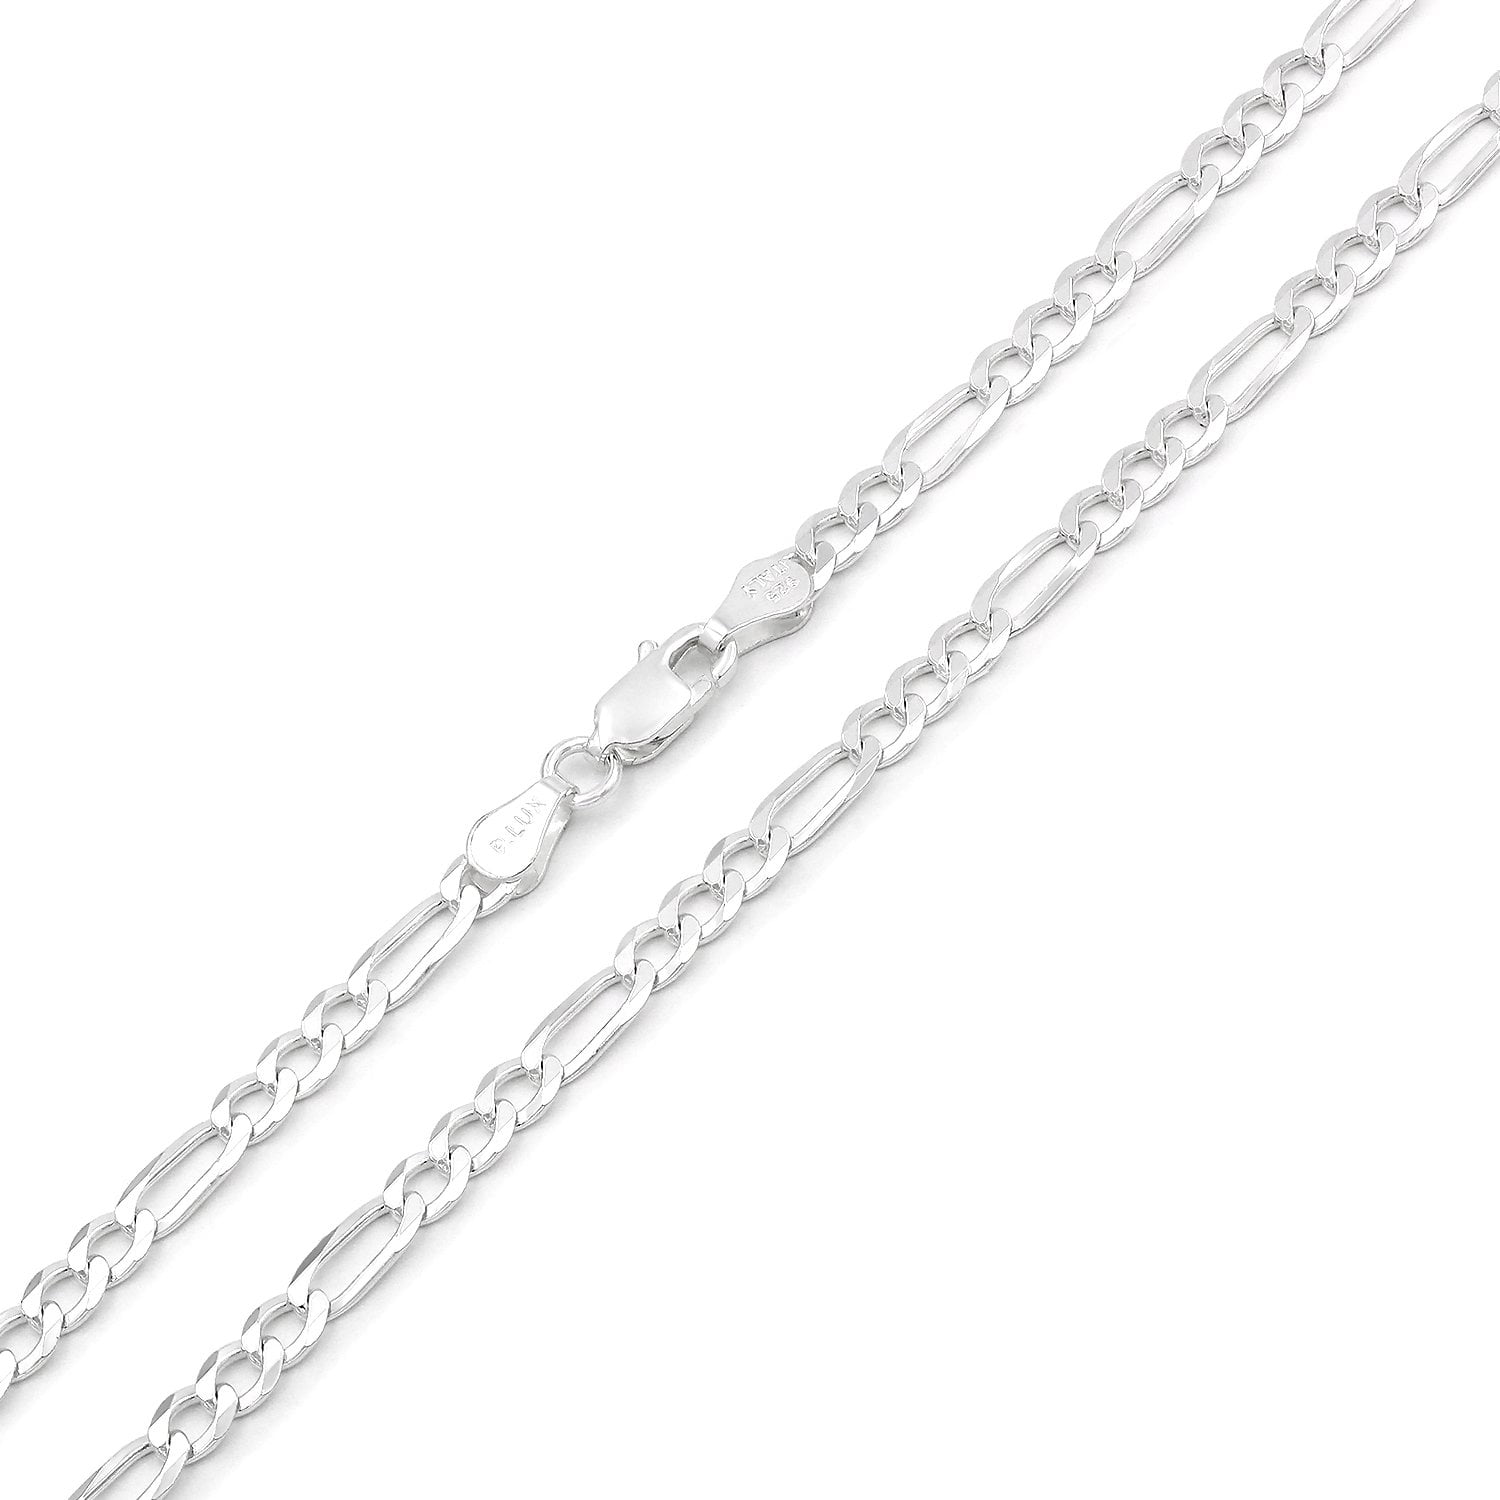 ITProLux Pave Link Necklace 16-30 FREE Microfiber Cloth 925 Italian Sterling Silver 3mm Solid Figaro Diamond Cut Chain Giorgio Bergamo